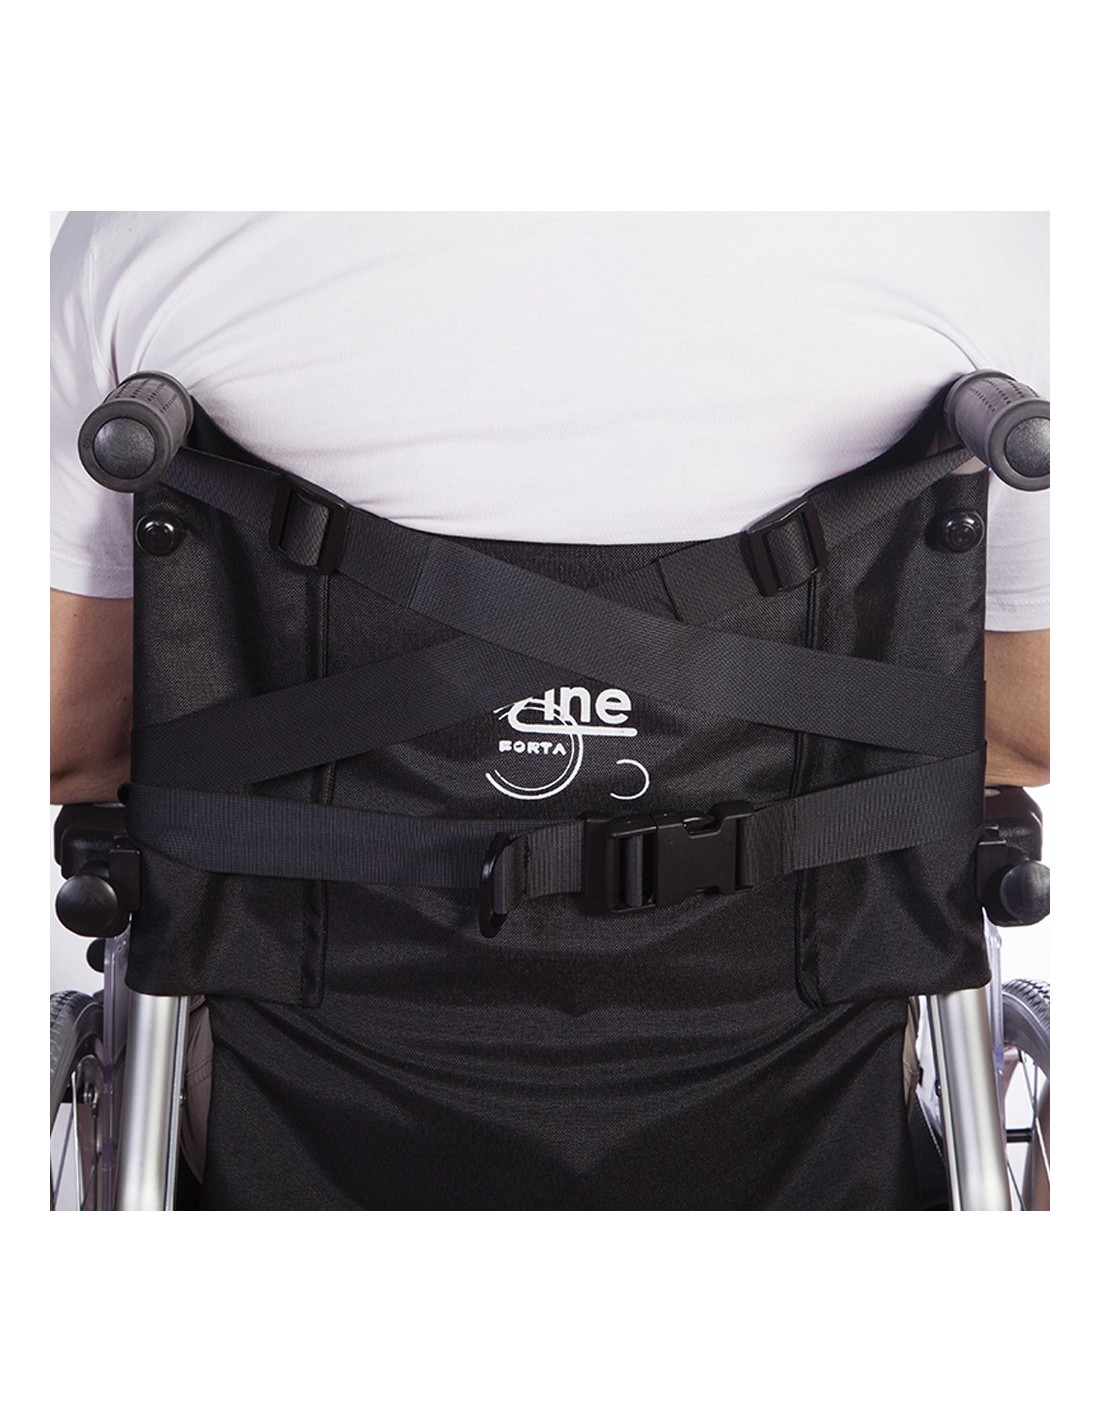 Cinturón abdominal abierto para silla de ruedas y sillas de descanso